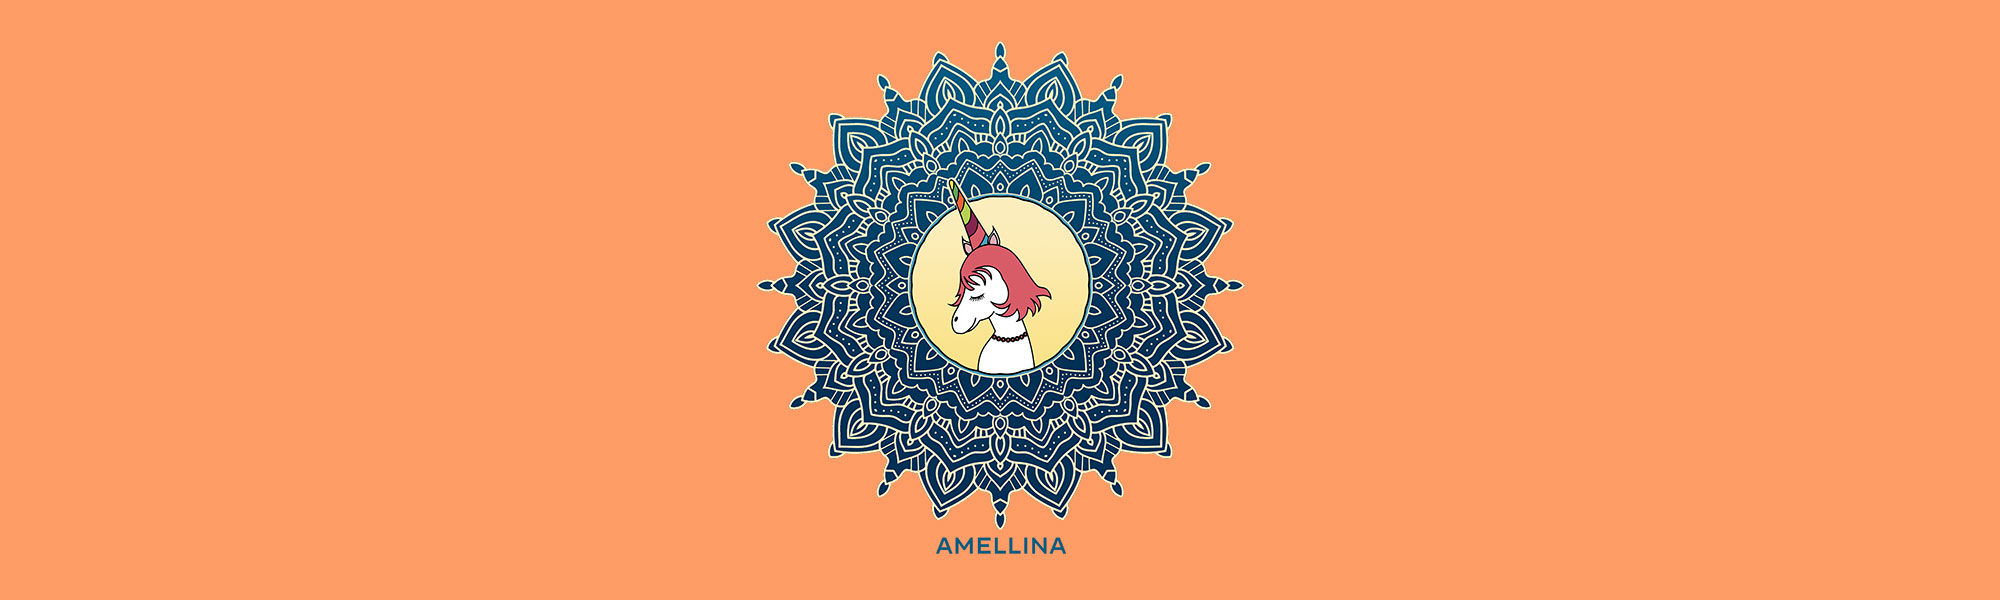 Unicorn Amellina